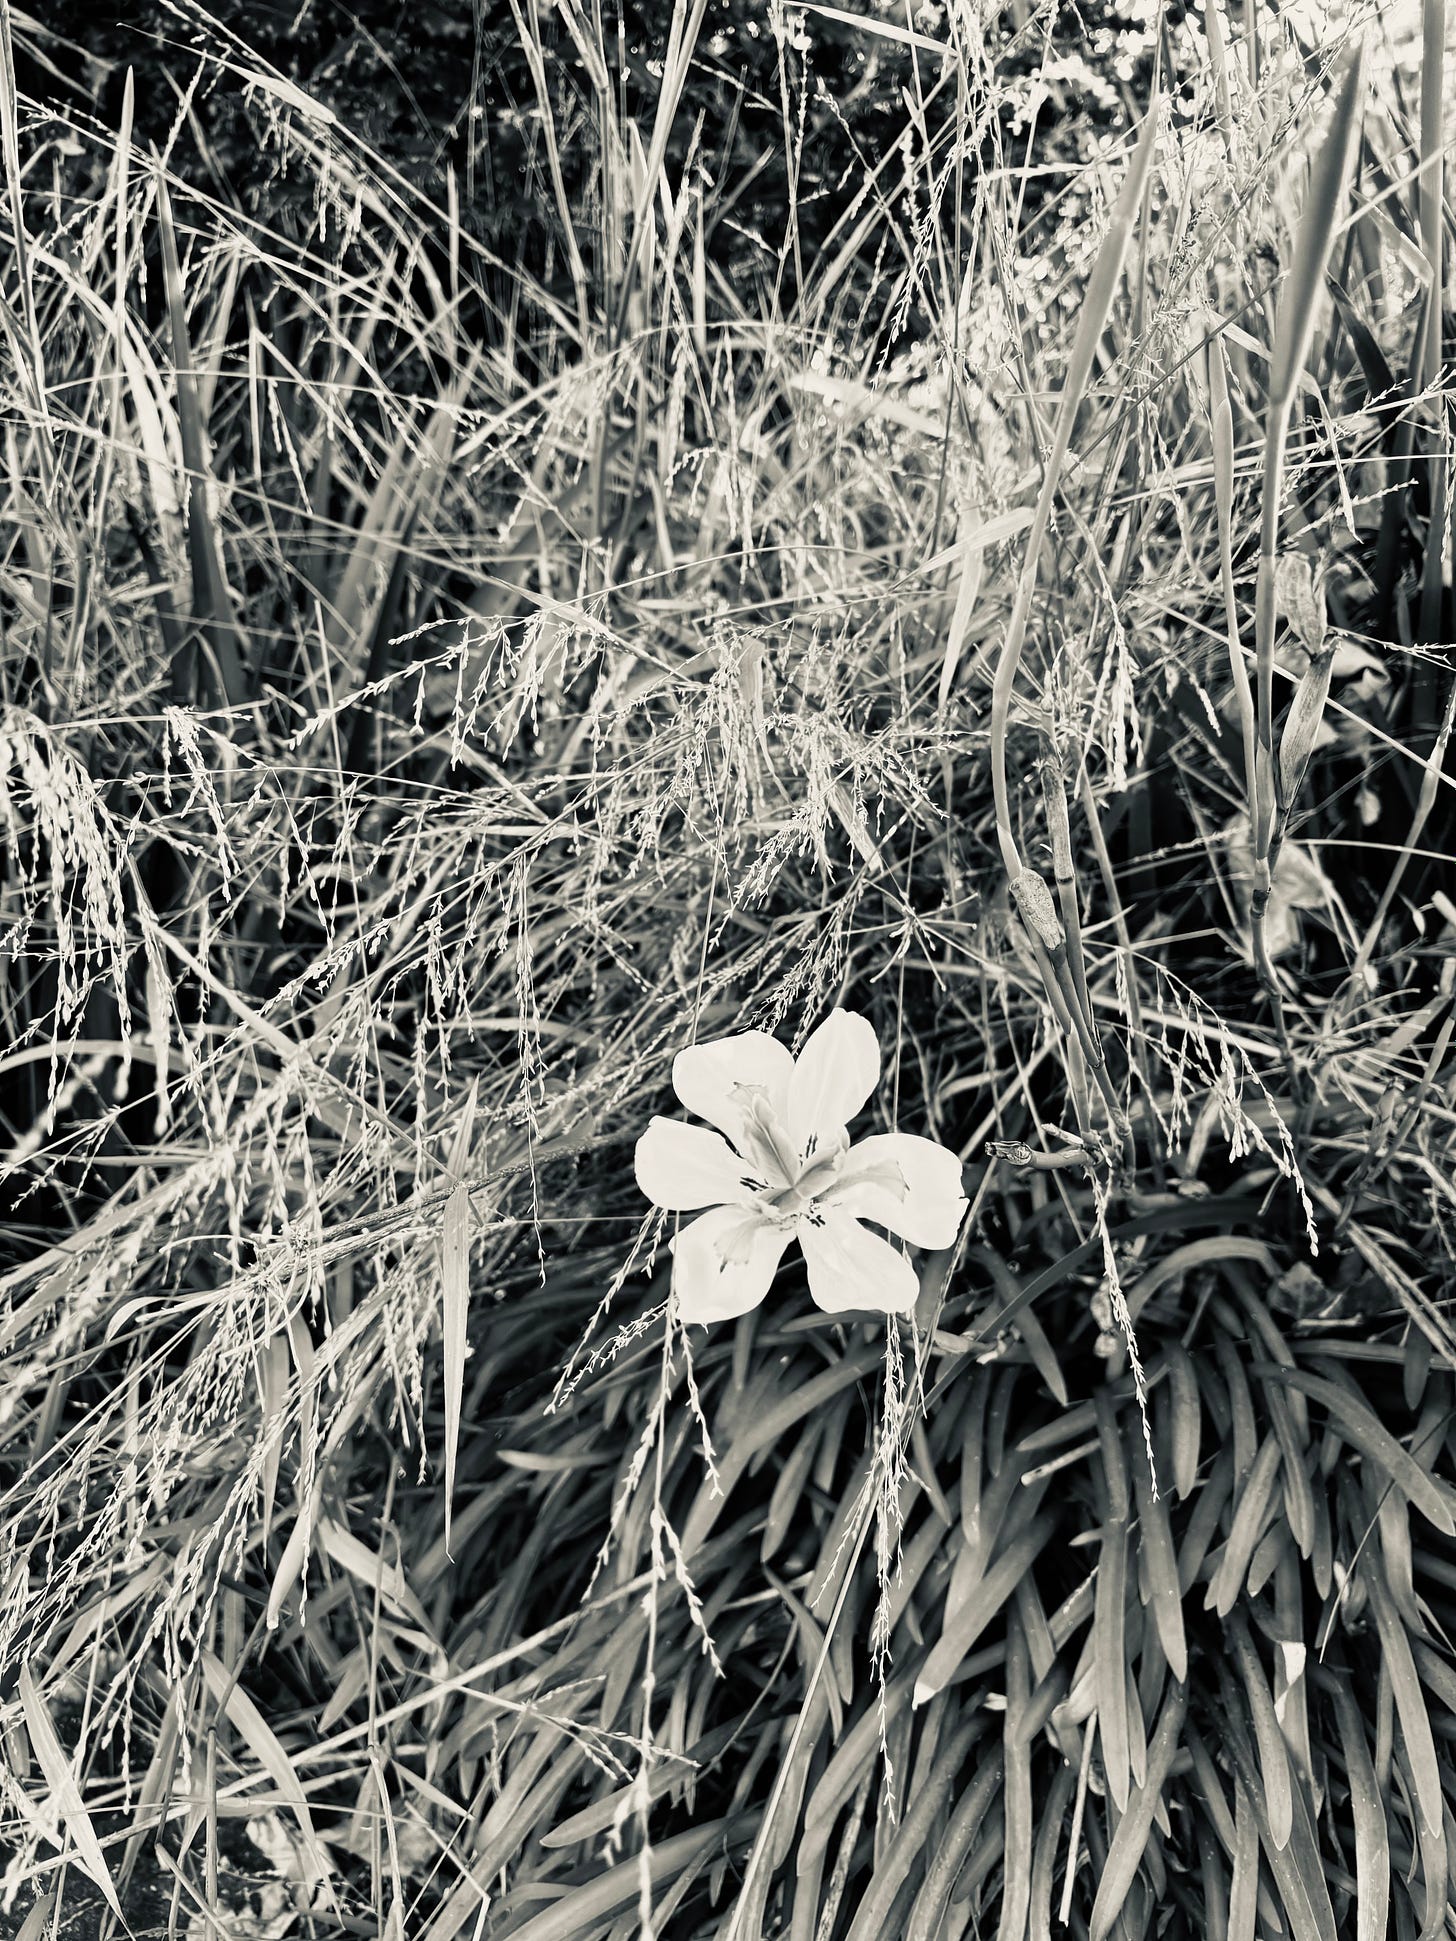 Single iris in weeds